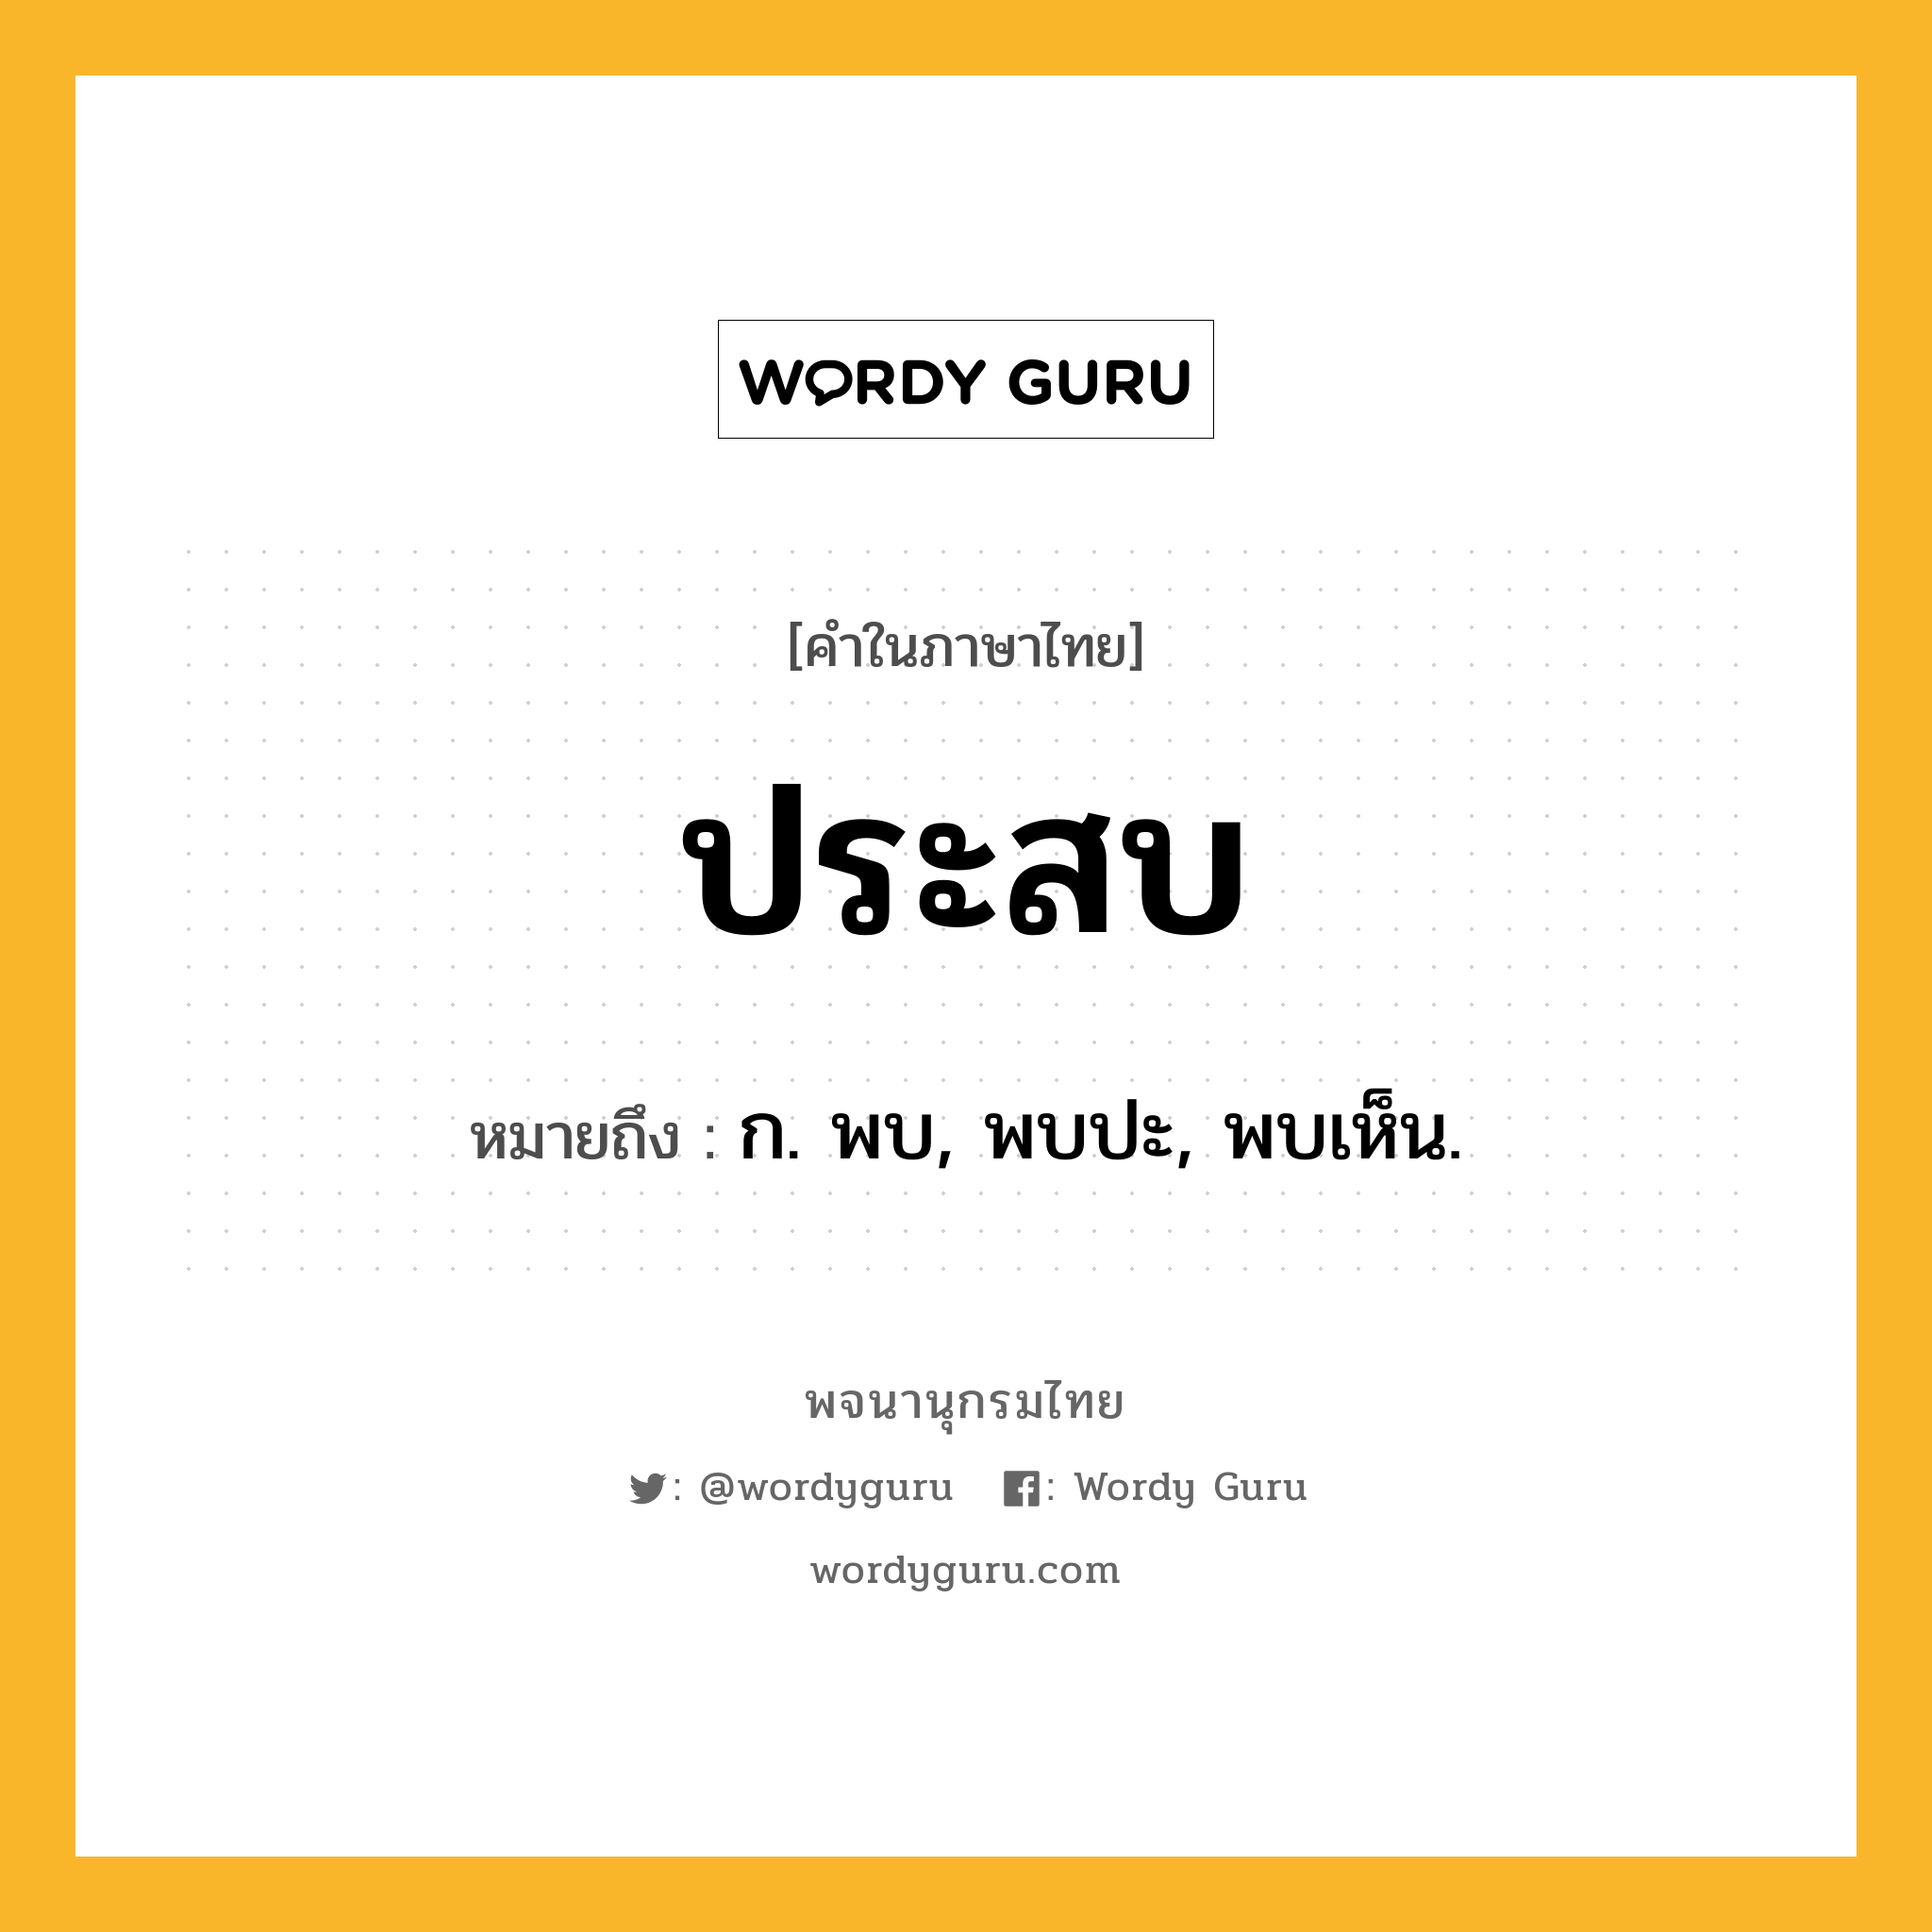 ประสบ หมายถึงอะไร?, คำในภาษาไทย ประสบ หมายถึง ก. พบ, พบปะ, พบเห็น.